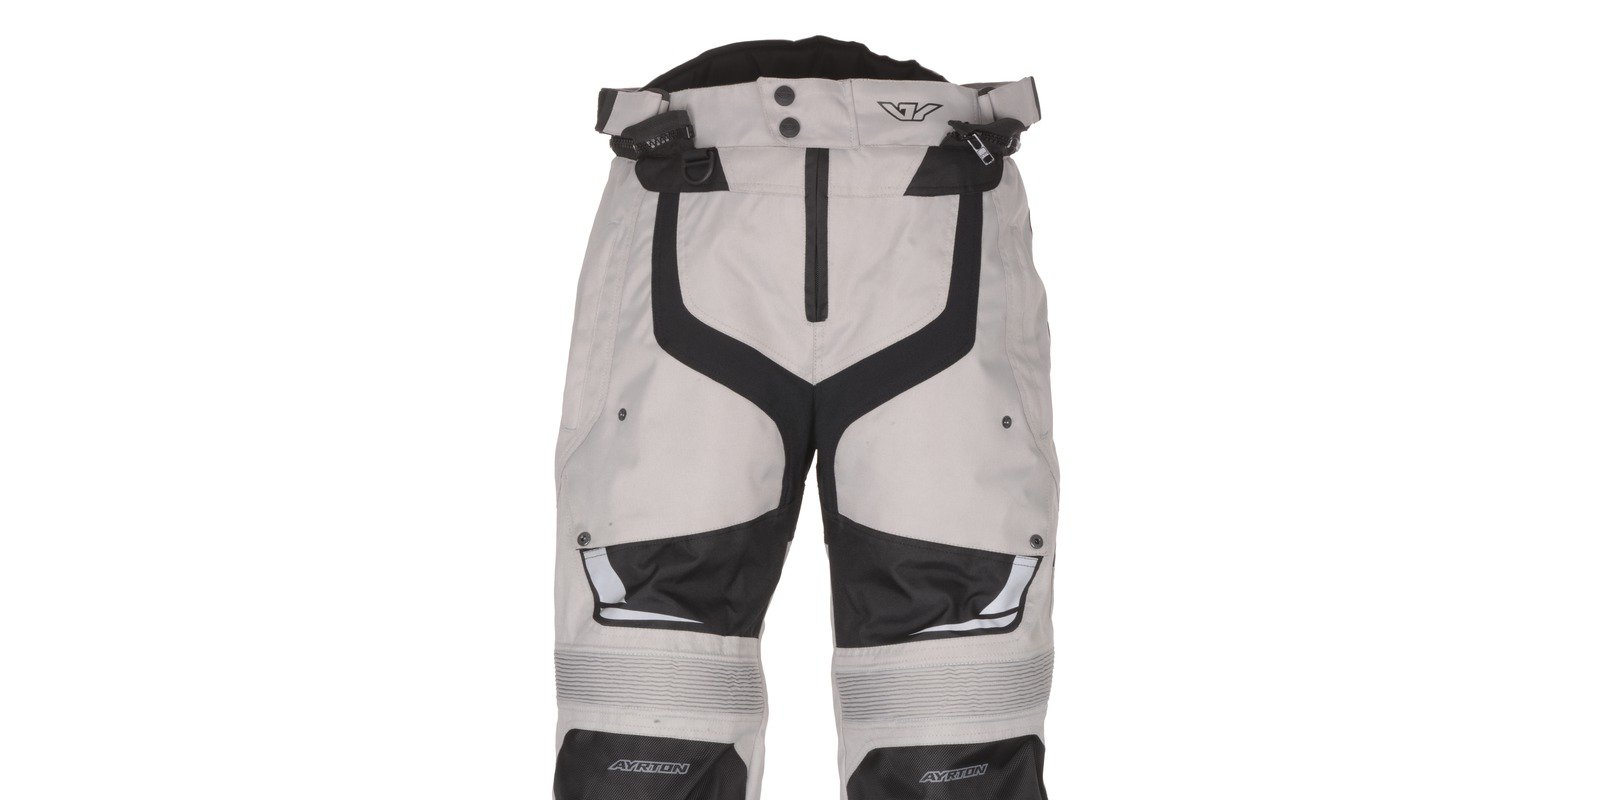 Obrázek produktu kalhoty Mig, AYRTON (černé/šedé) M110-77